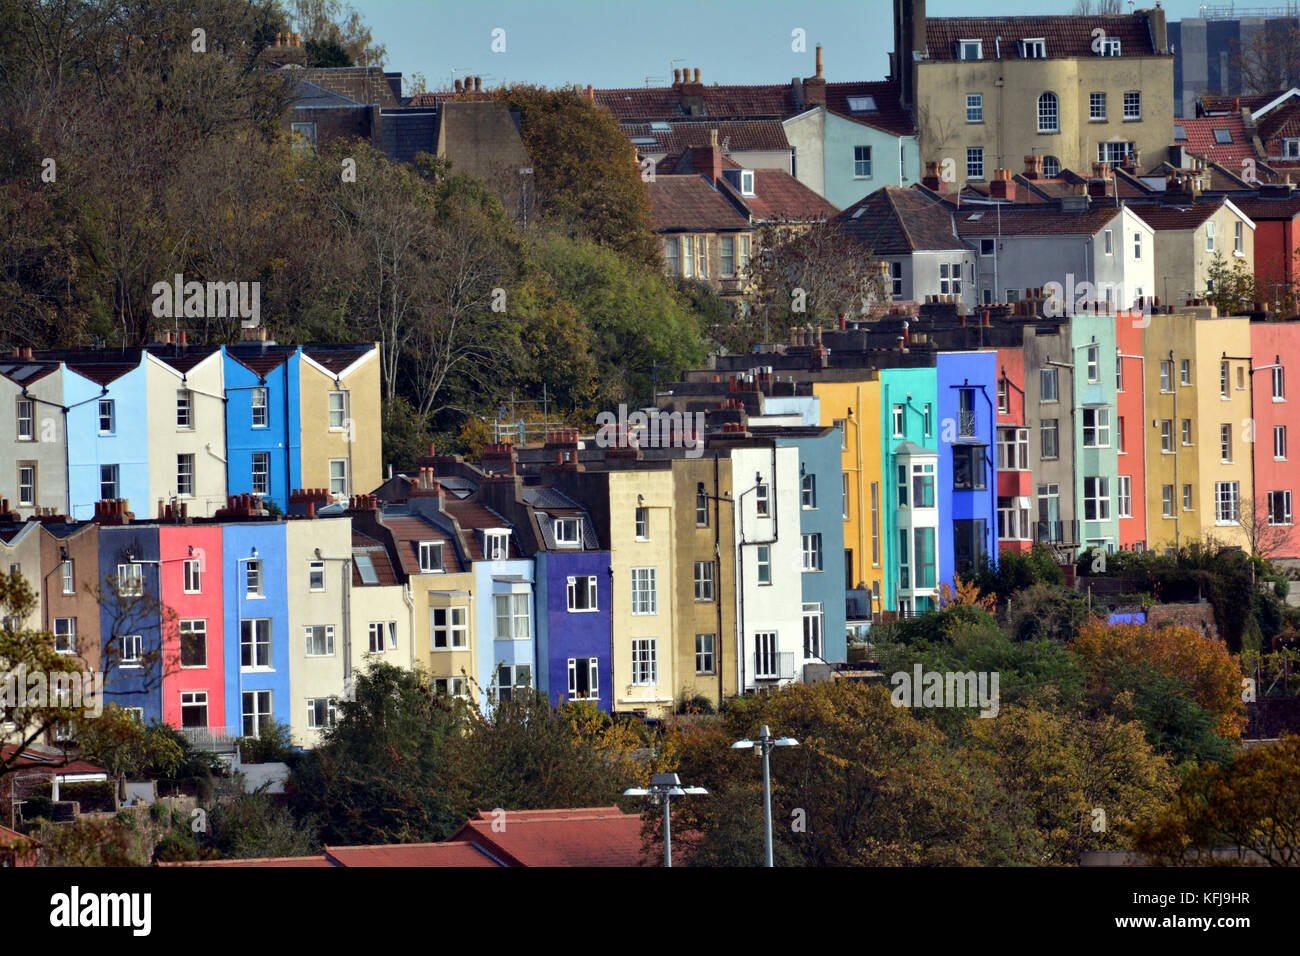 Sul Pendio Di Una Collina Nella Citta Di Bristol Si Trova Una Fila Di Case Colorate E Appartamenti Con Fantastiche Vedute Della Nostra Citta Bristol E Stato Votato Come Il Miglior Posto